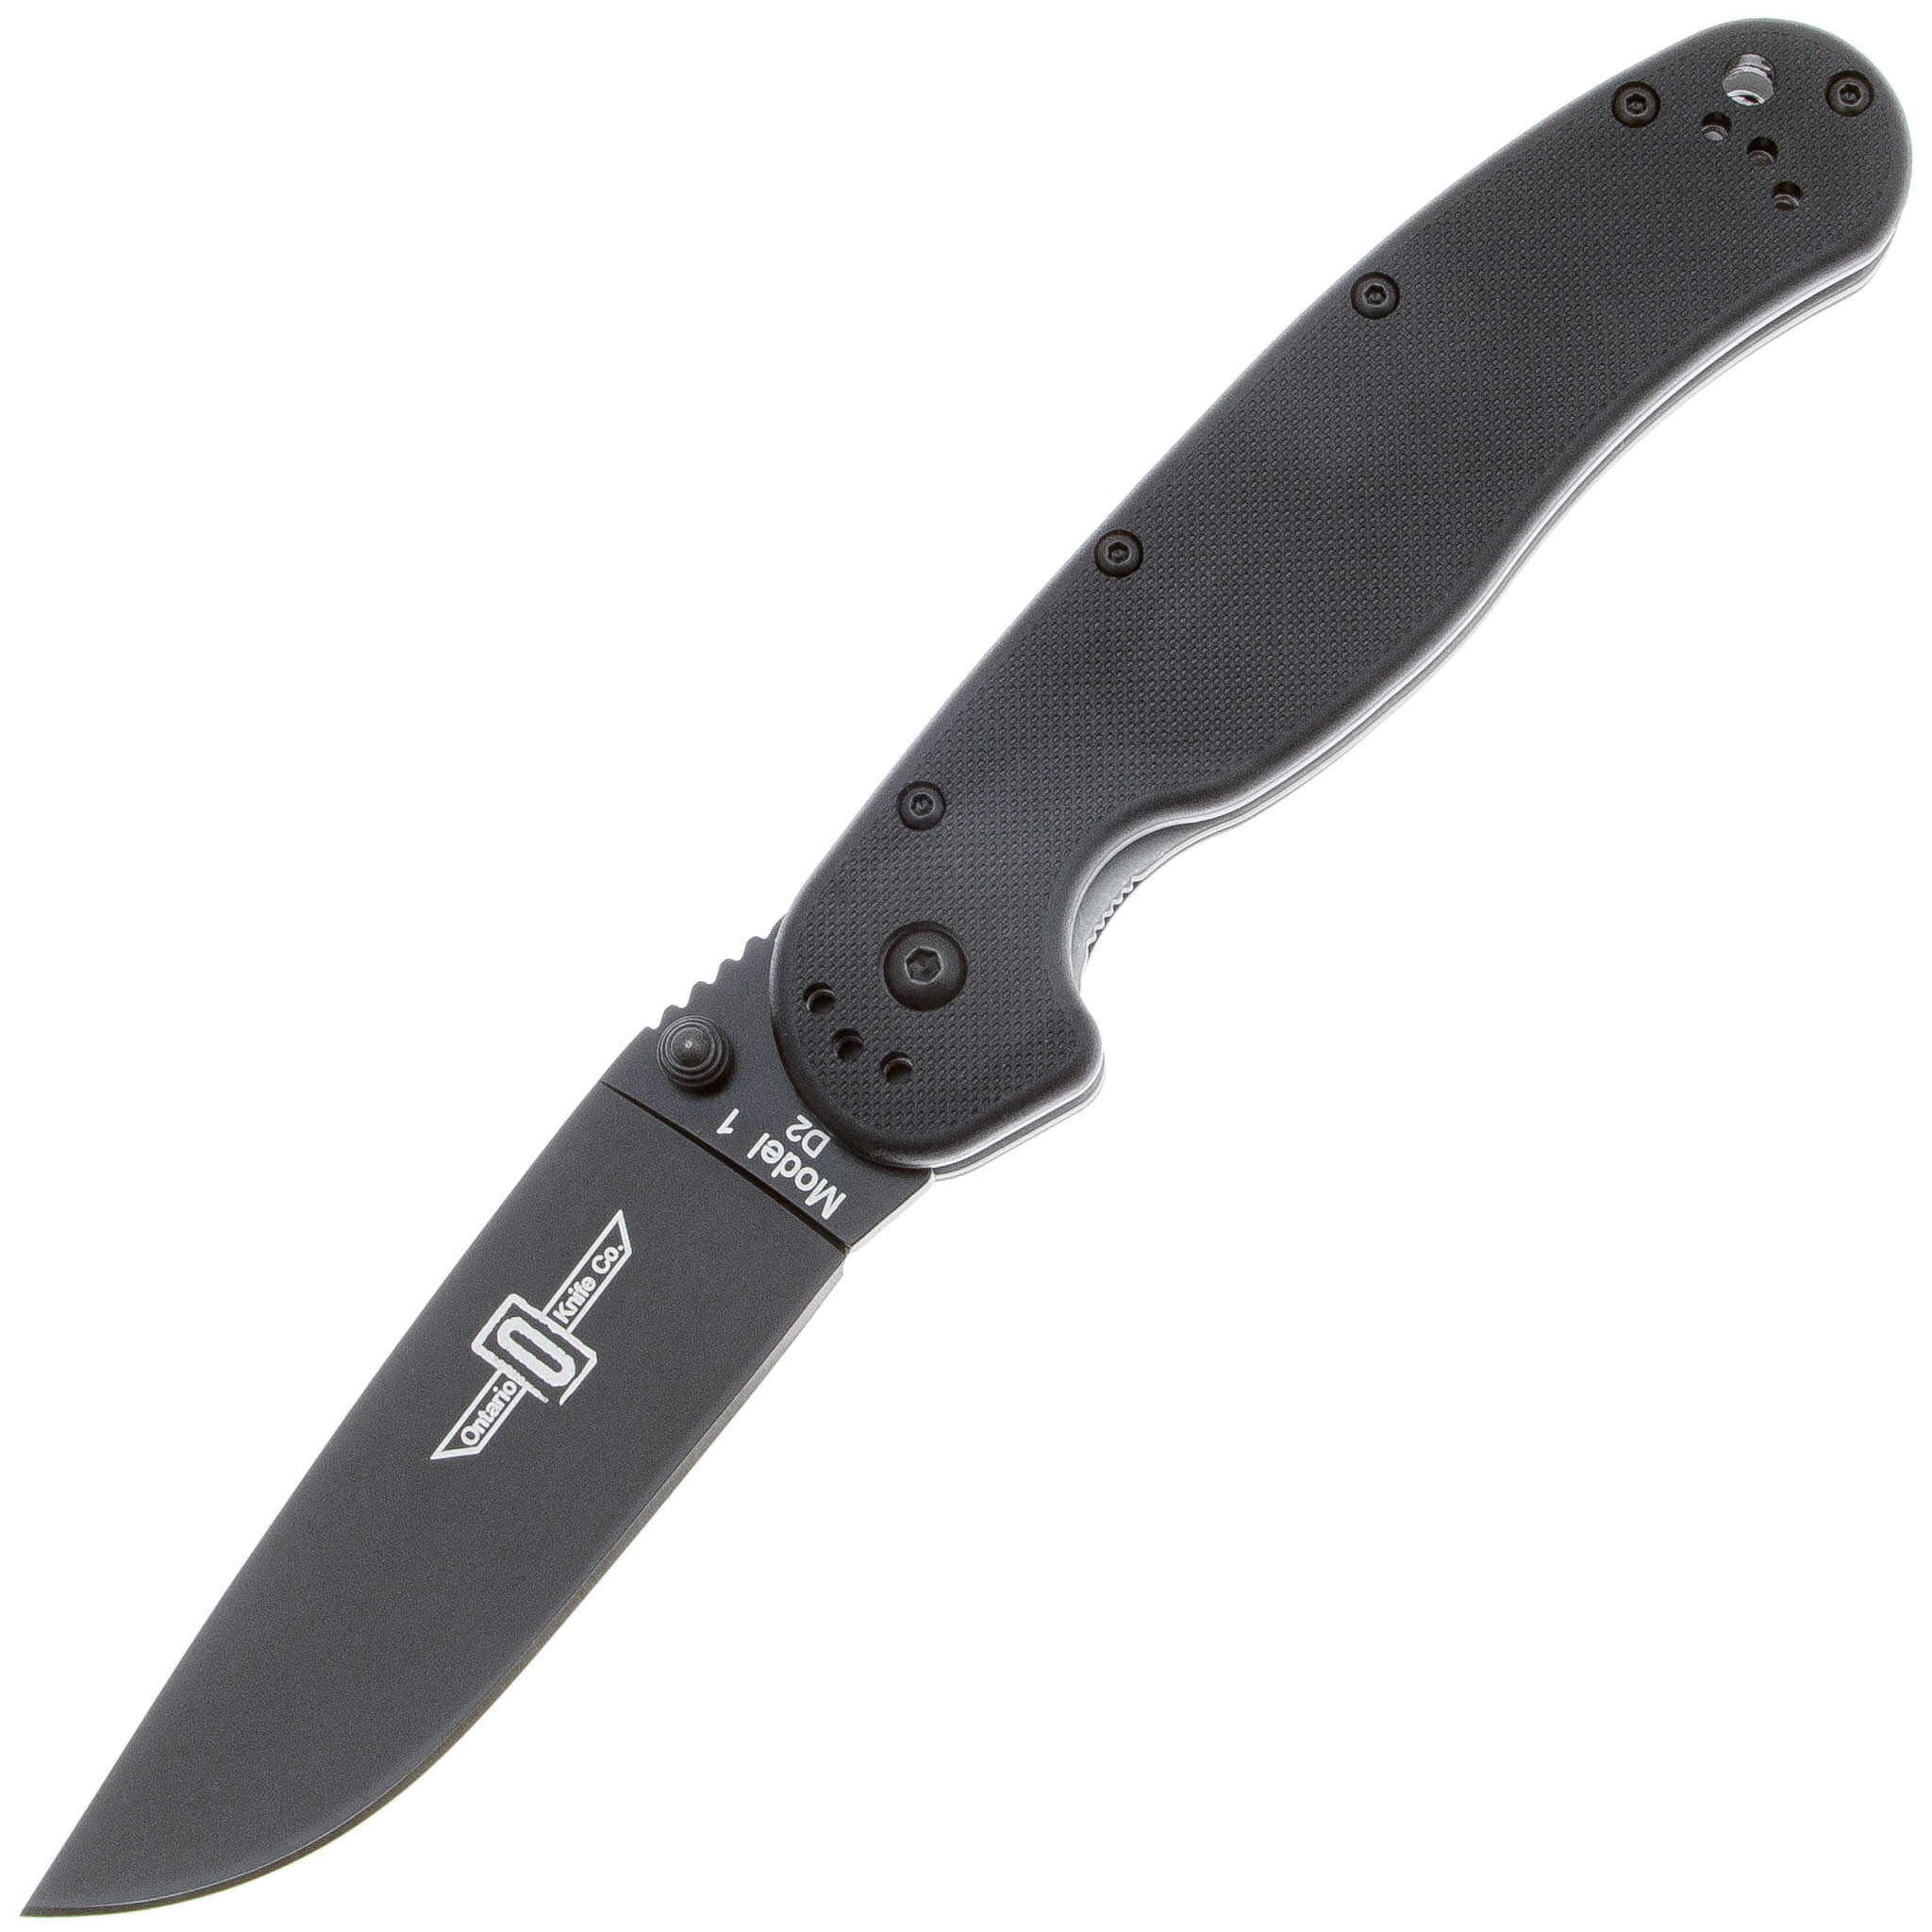 Нож складной Ontario RAT-1, сталь D2, рукоять термопластик GRN, black складной нож ontario joe pardue utilitac ii   tanto blade highly textured handle